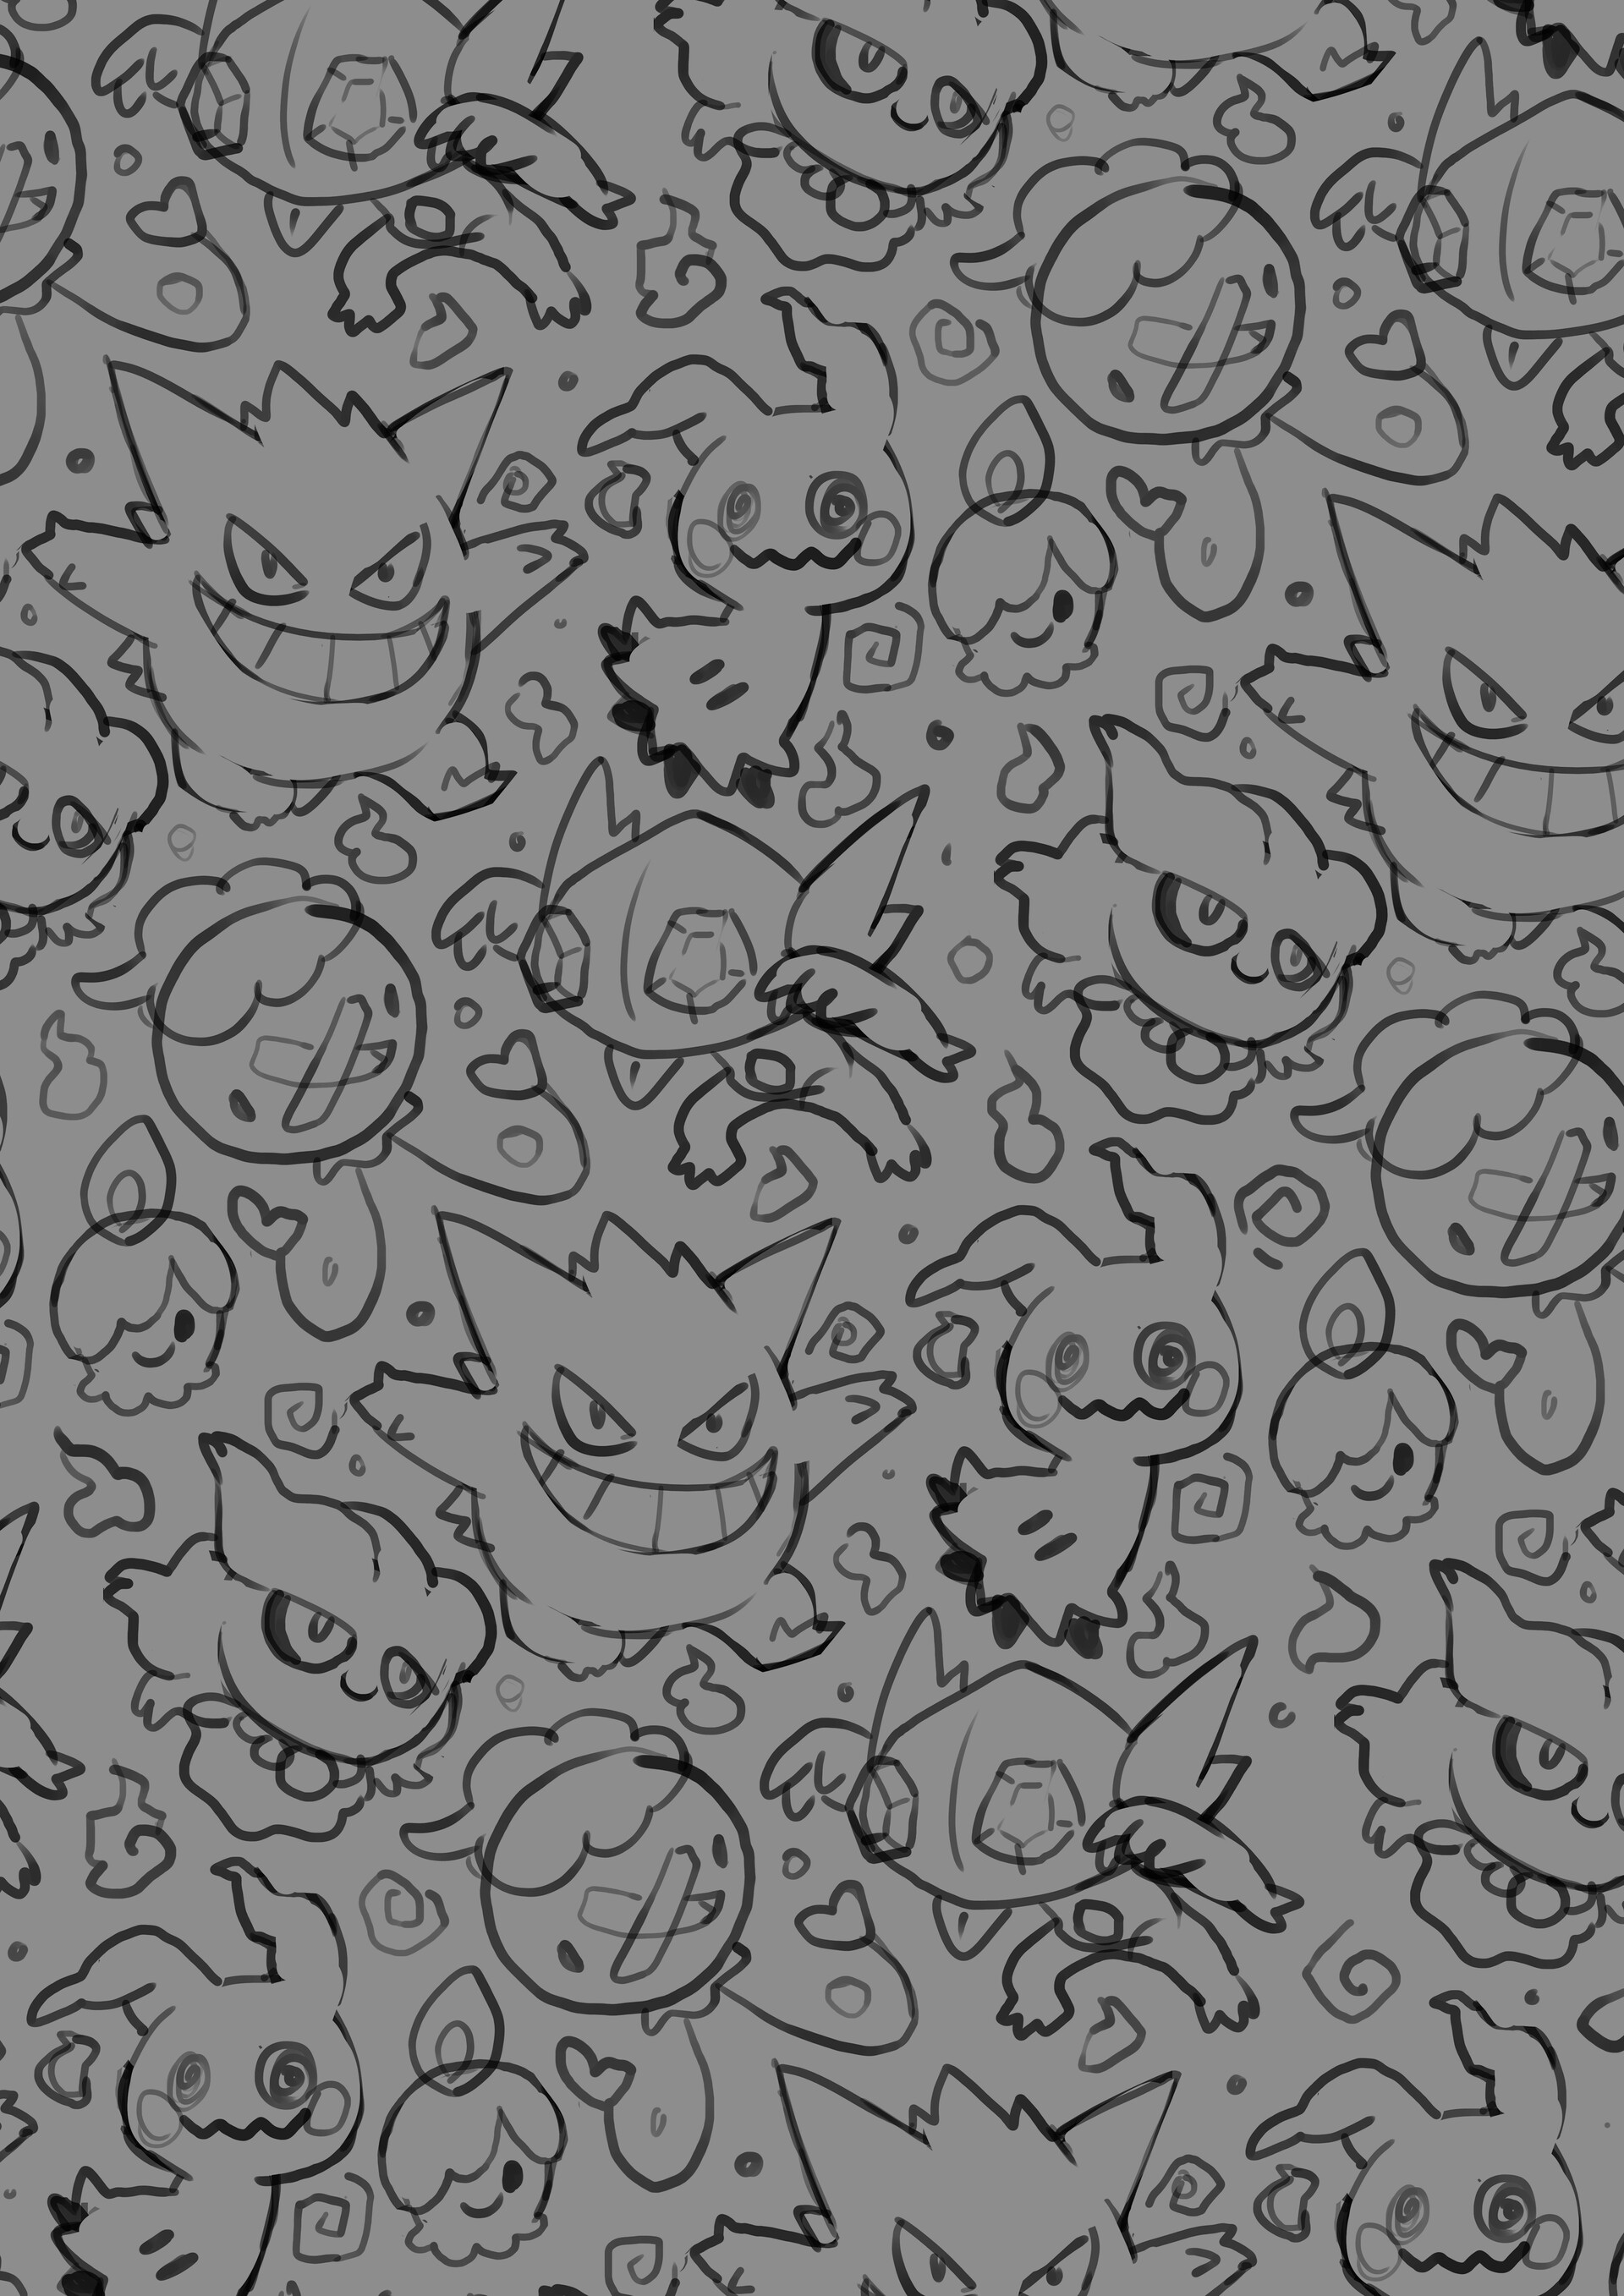 ArtStation - Ghost pokemon pattern